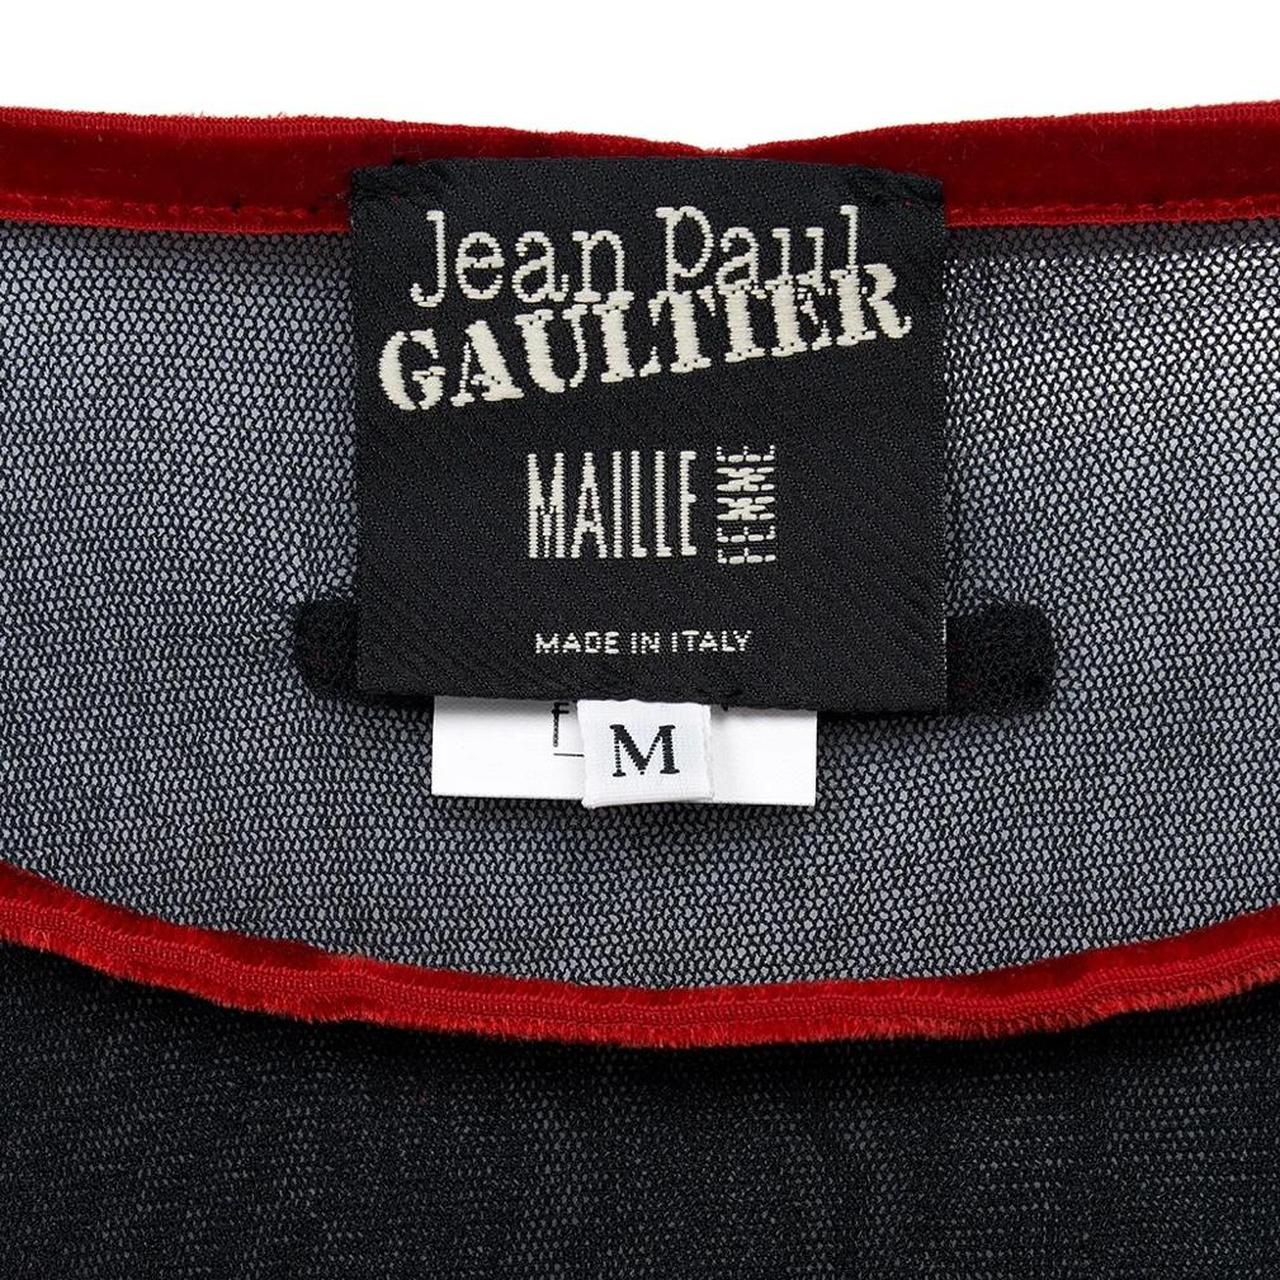 Gaultier Jeans Women's T-shirt (3)